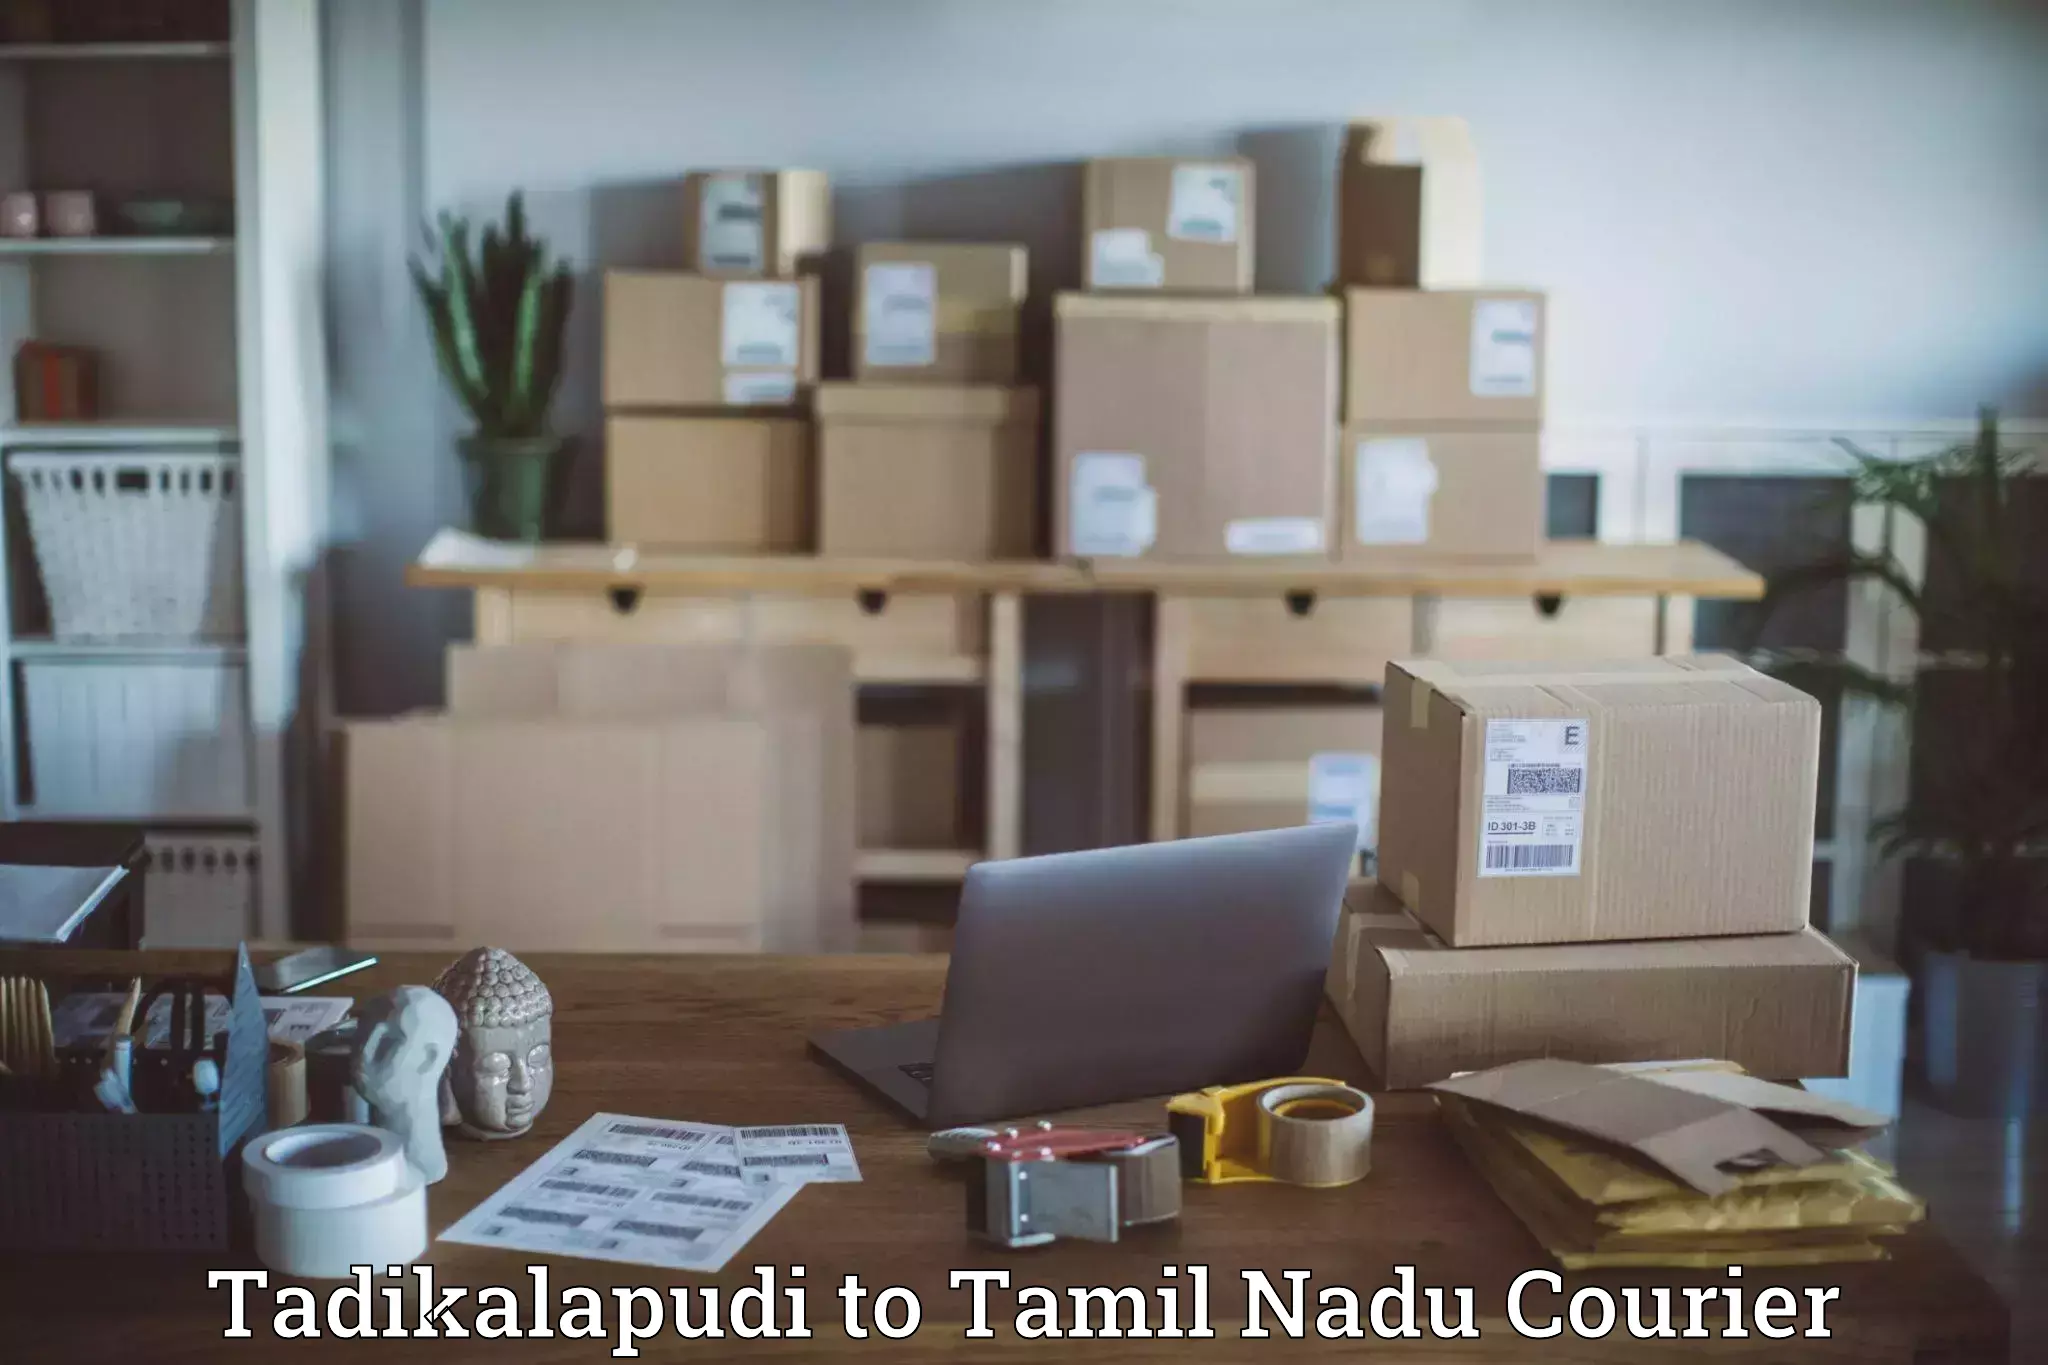 Next day courier Tadikalapudi to Tamil Nadu